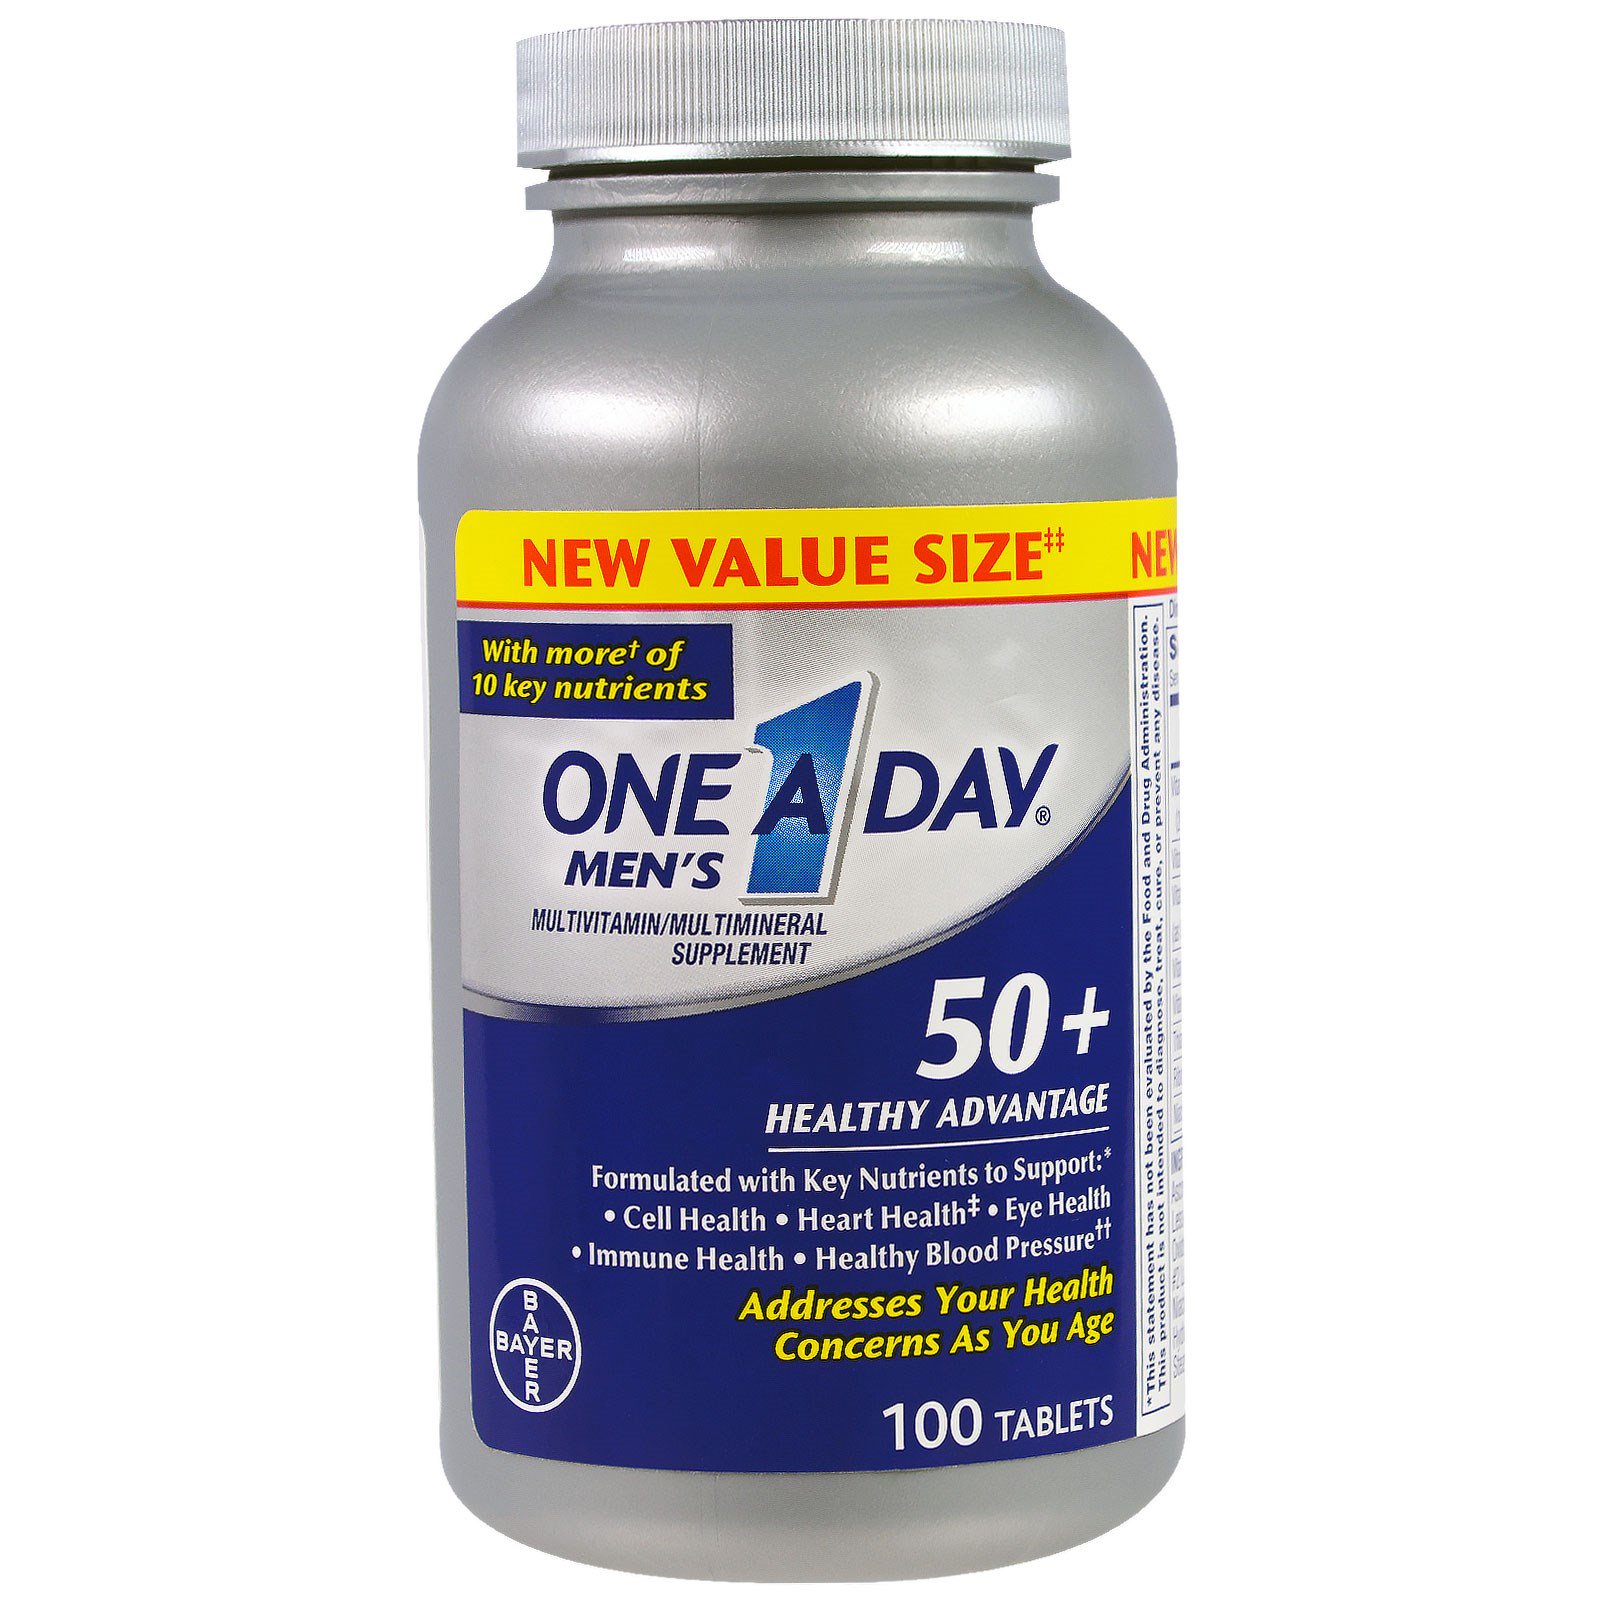 One-A-Day,  Для мужчин 50+, польза для здоровья, мультивитаминная/мультиминеральная добавка, 100 таблеток